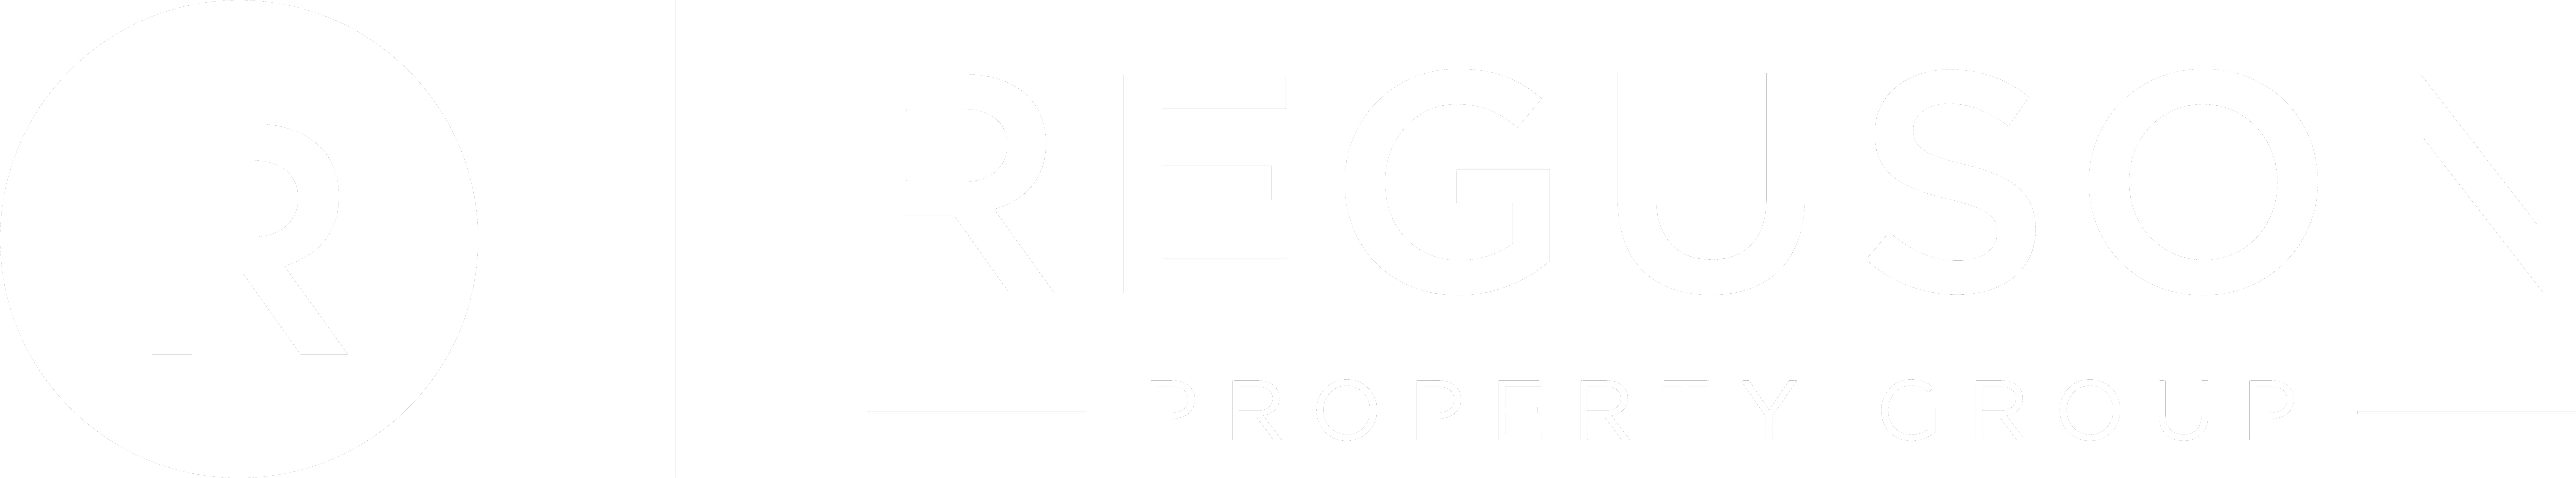 Reguson Property Group - NORTH WARD